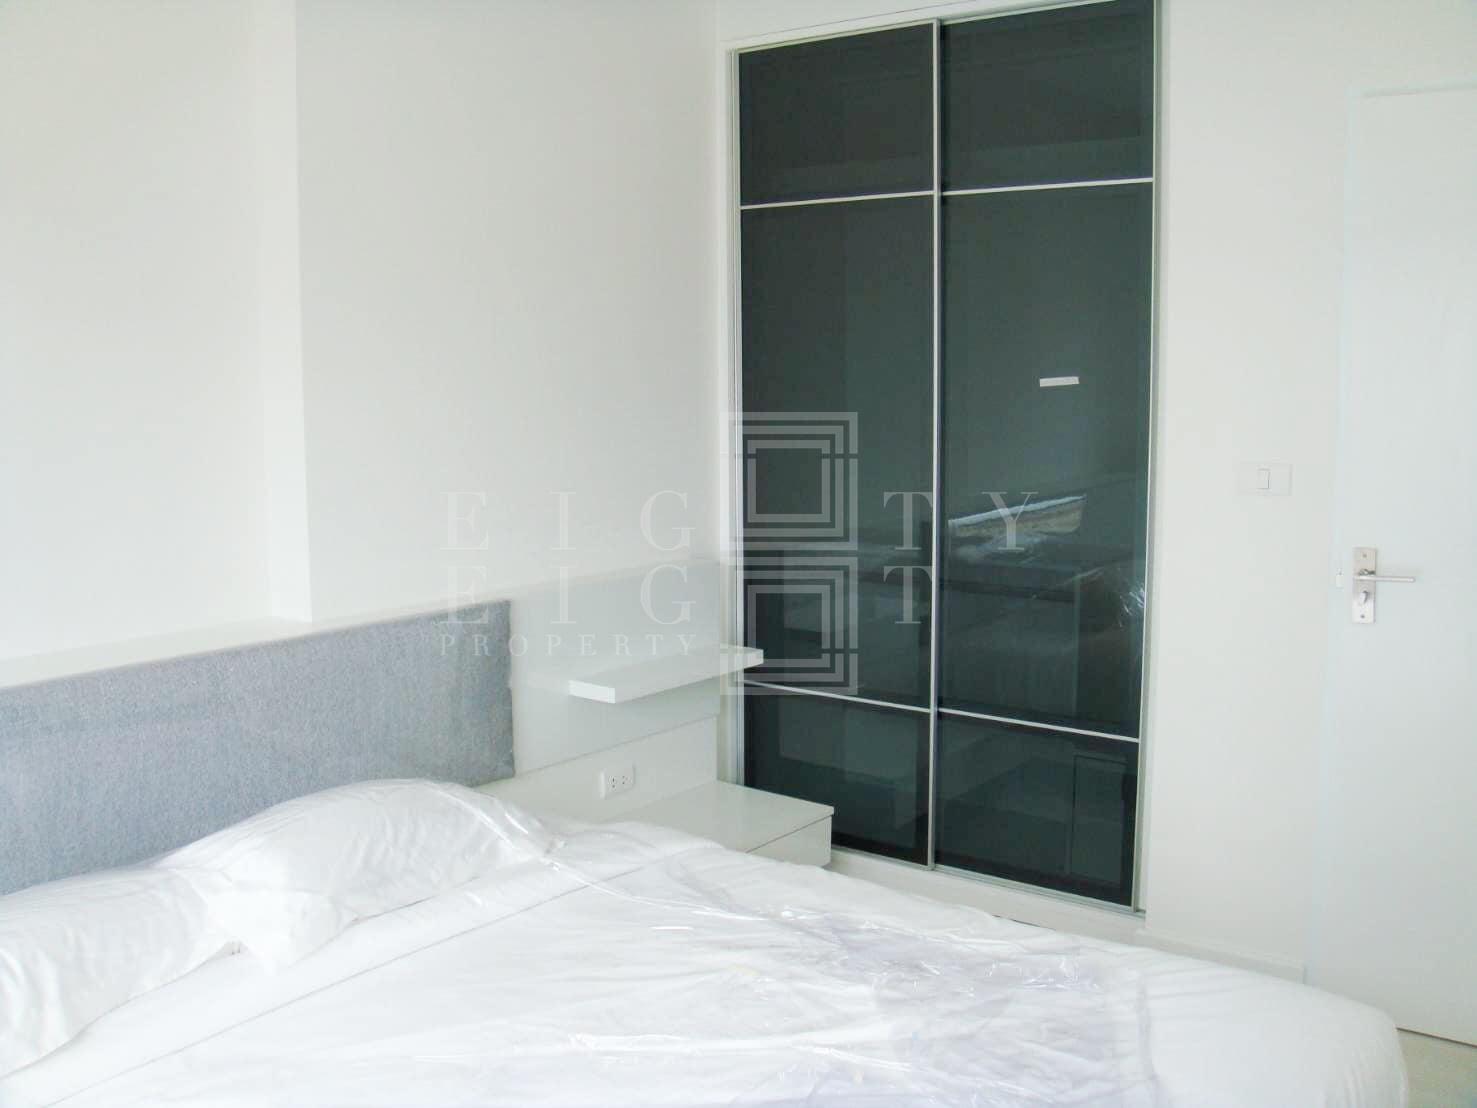 เช่าคอนโด เดอะ รูม รัชดา-ลาดพร้าว คอนโดมิเนียม - Condo Rental The Room Ratchada-Ladprao condominium - 618170